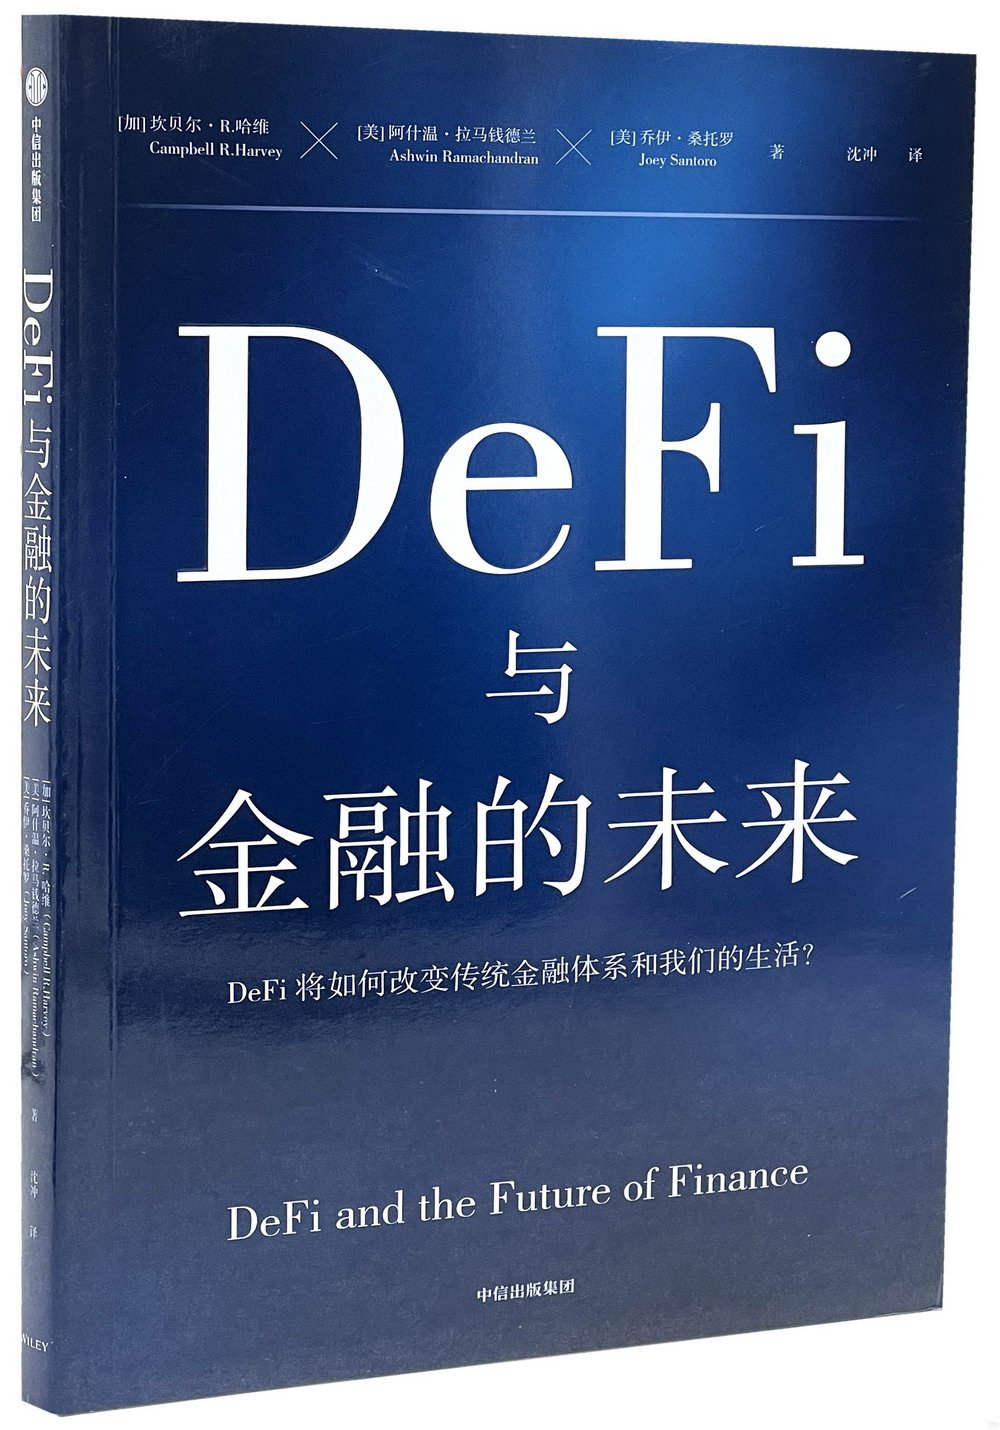 DeFi與金融的未來